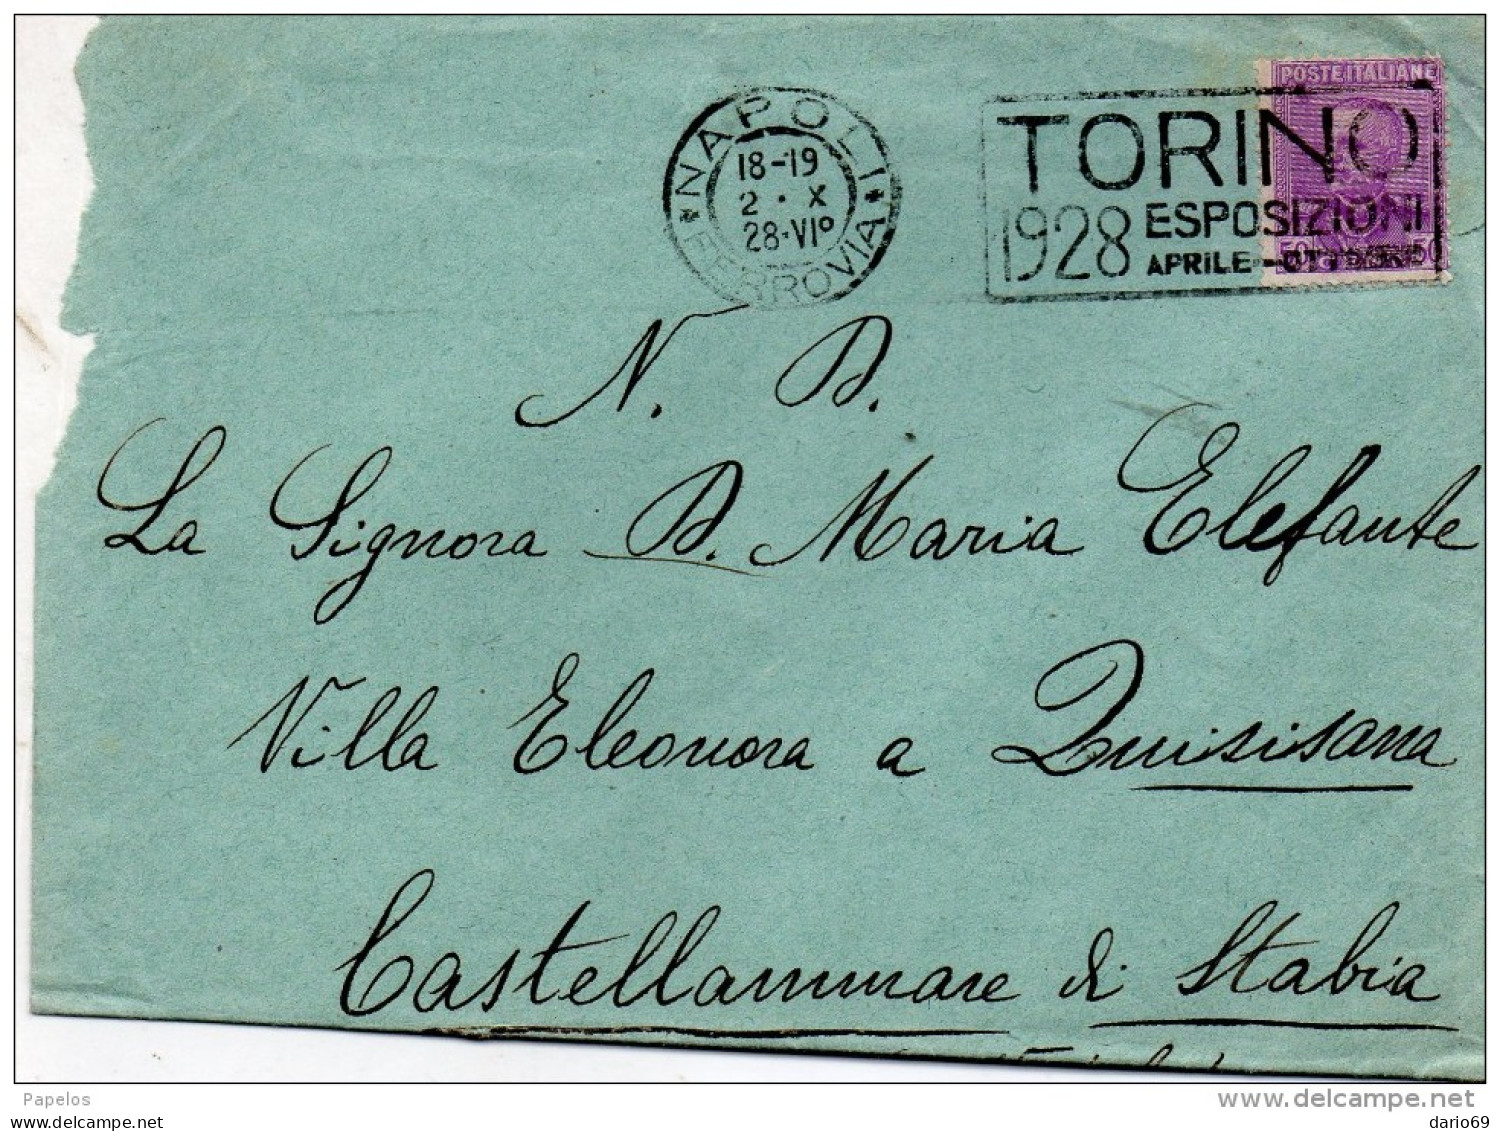 1928 LETTERA CON ANNULLO  NAPOLI + TARGHETTA   TORINO 1928 ESPOSIZIONI - Marcophilia